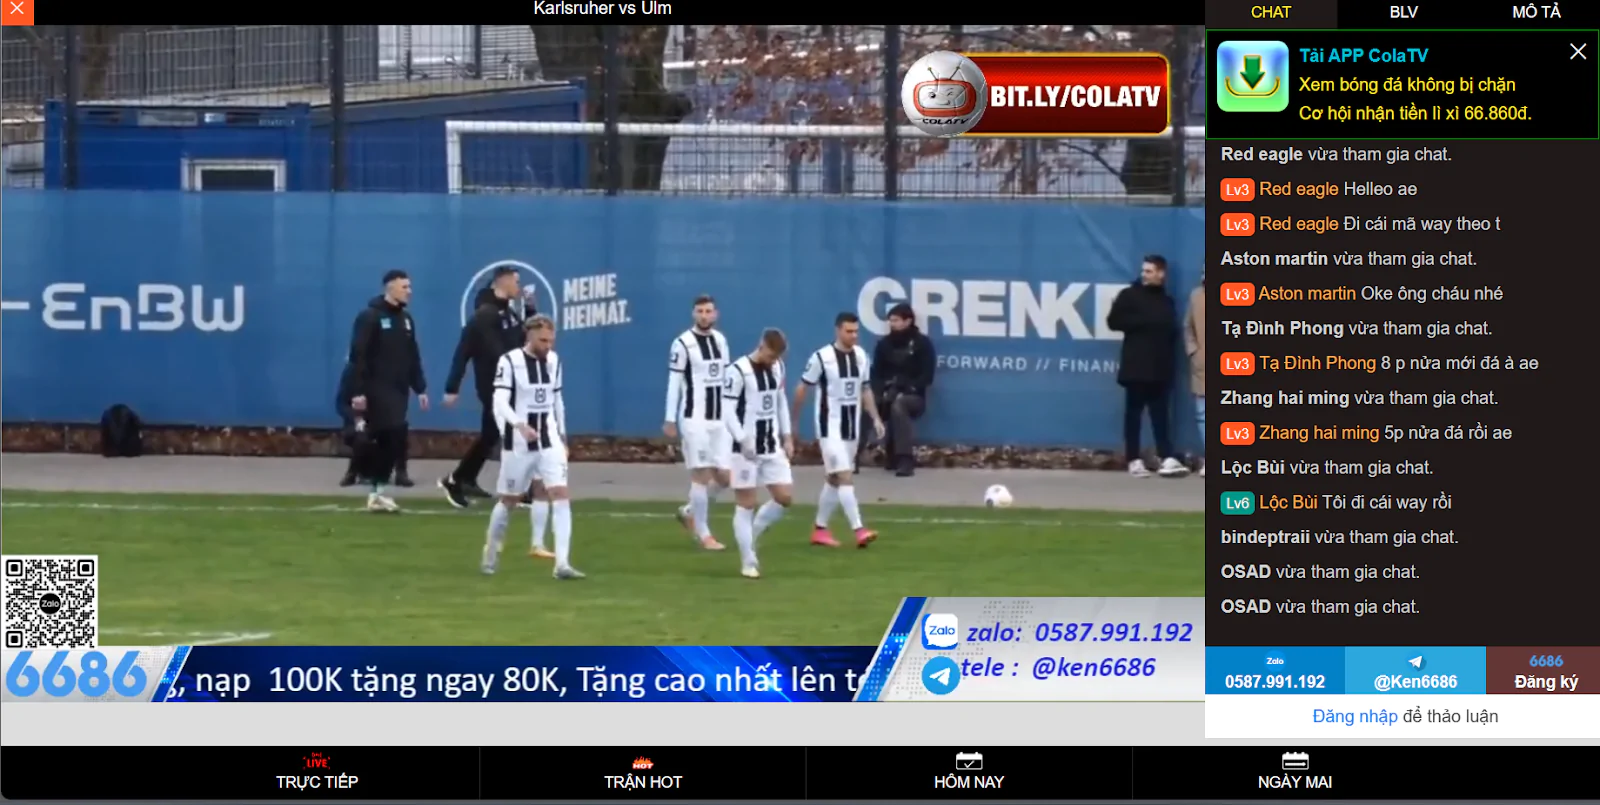 Giới thiệu KhomucTV-Trang kênh tổng hợp xem bóng đá trực tiếp